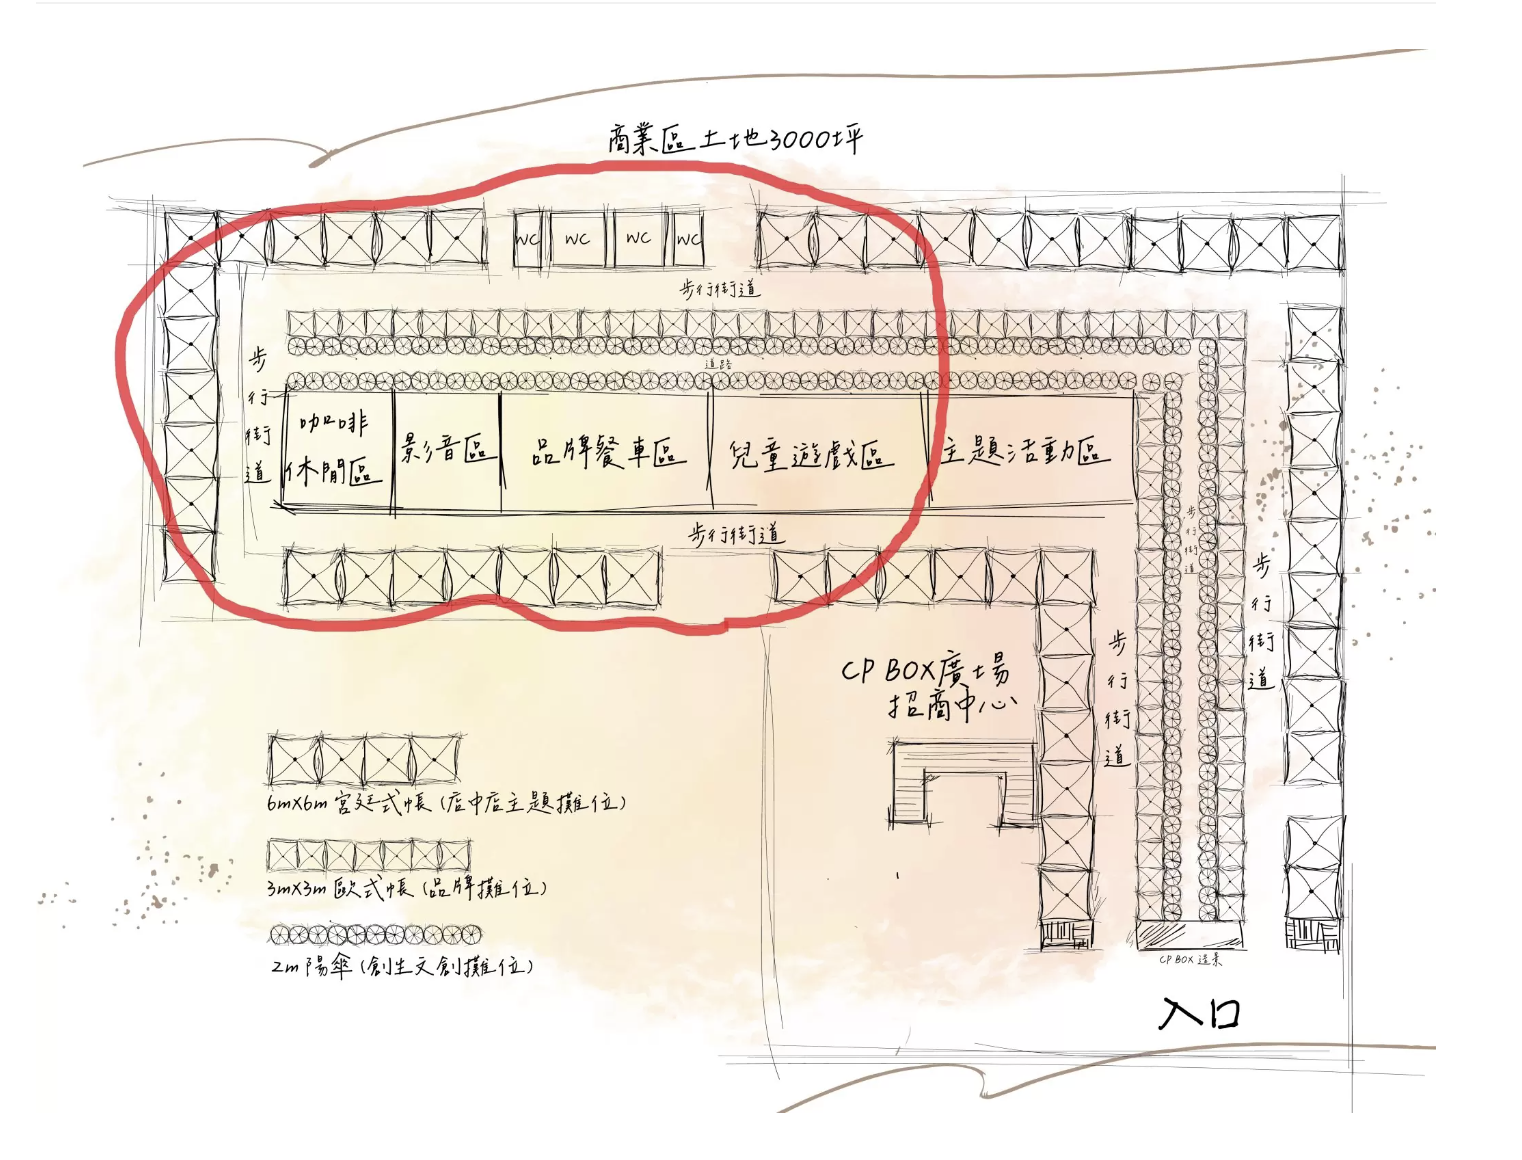 高雄市集「CP BOX 青埔廣場」攤位圖；免費停車場為紅框區域